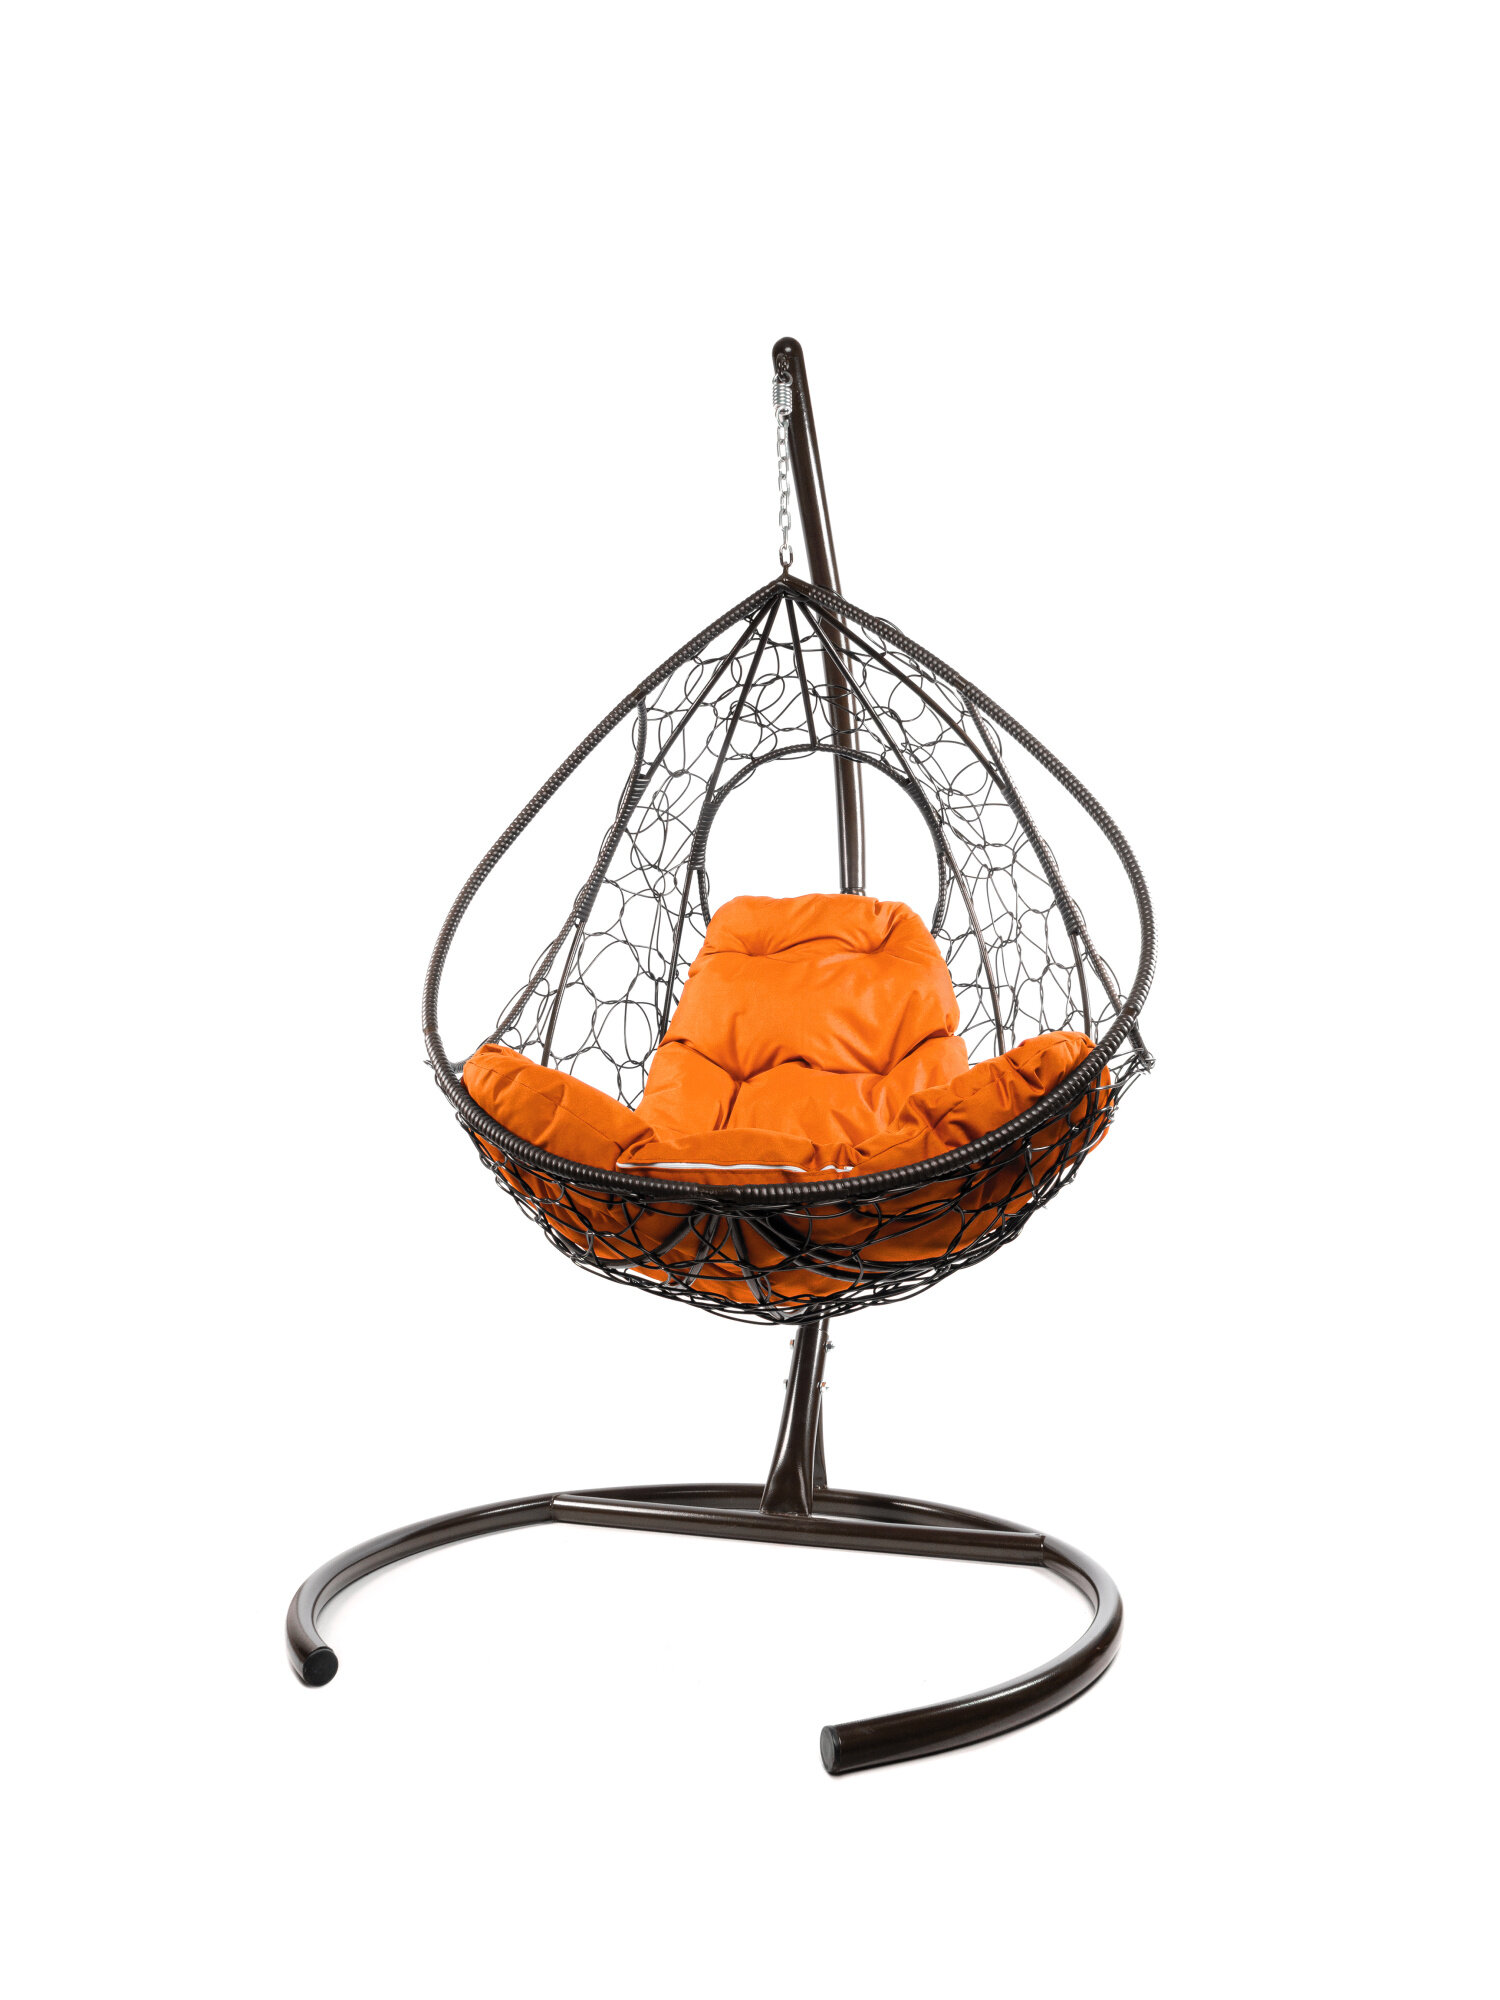 Подвесное кресло M-group долька с ротангом коричневое оранжевая подушка